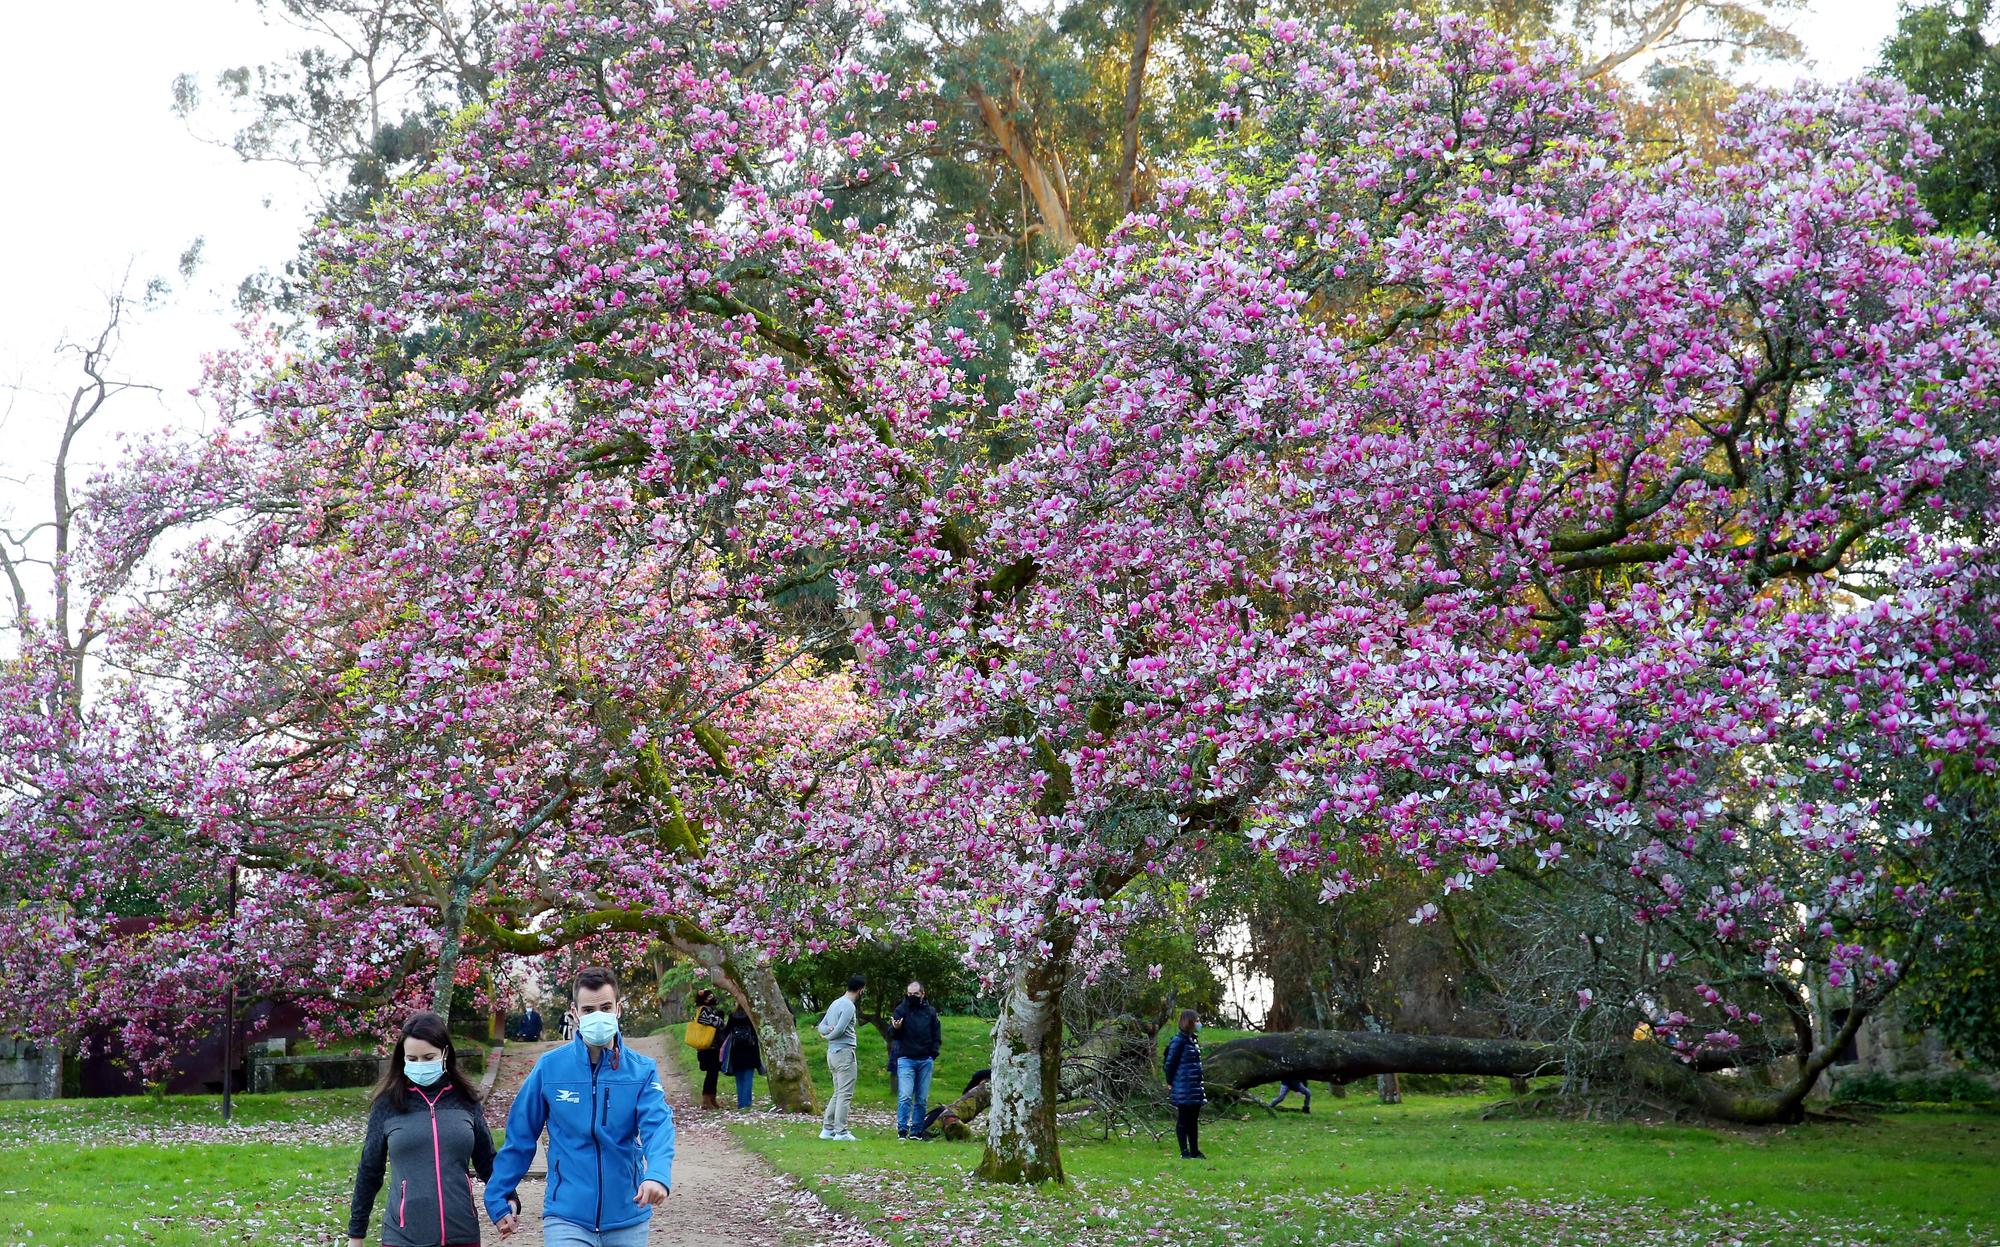 Una pareja paseo bajo uno de los magnolios en flor del parque.